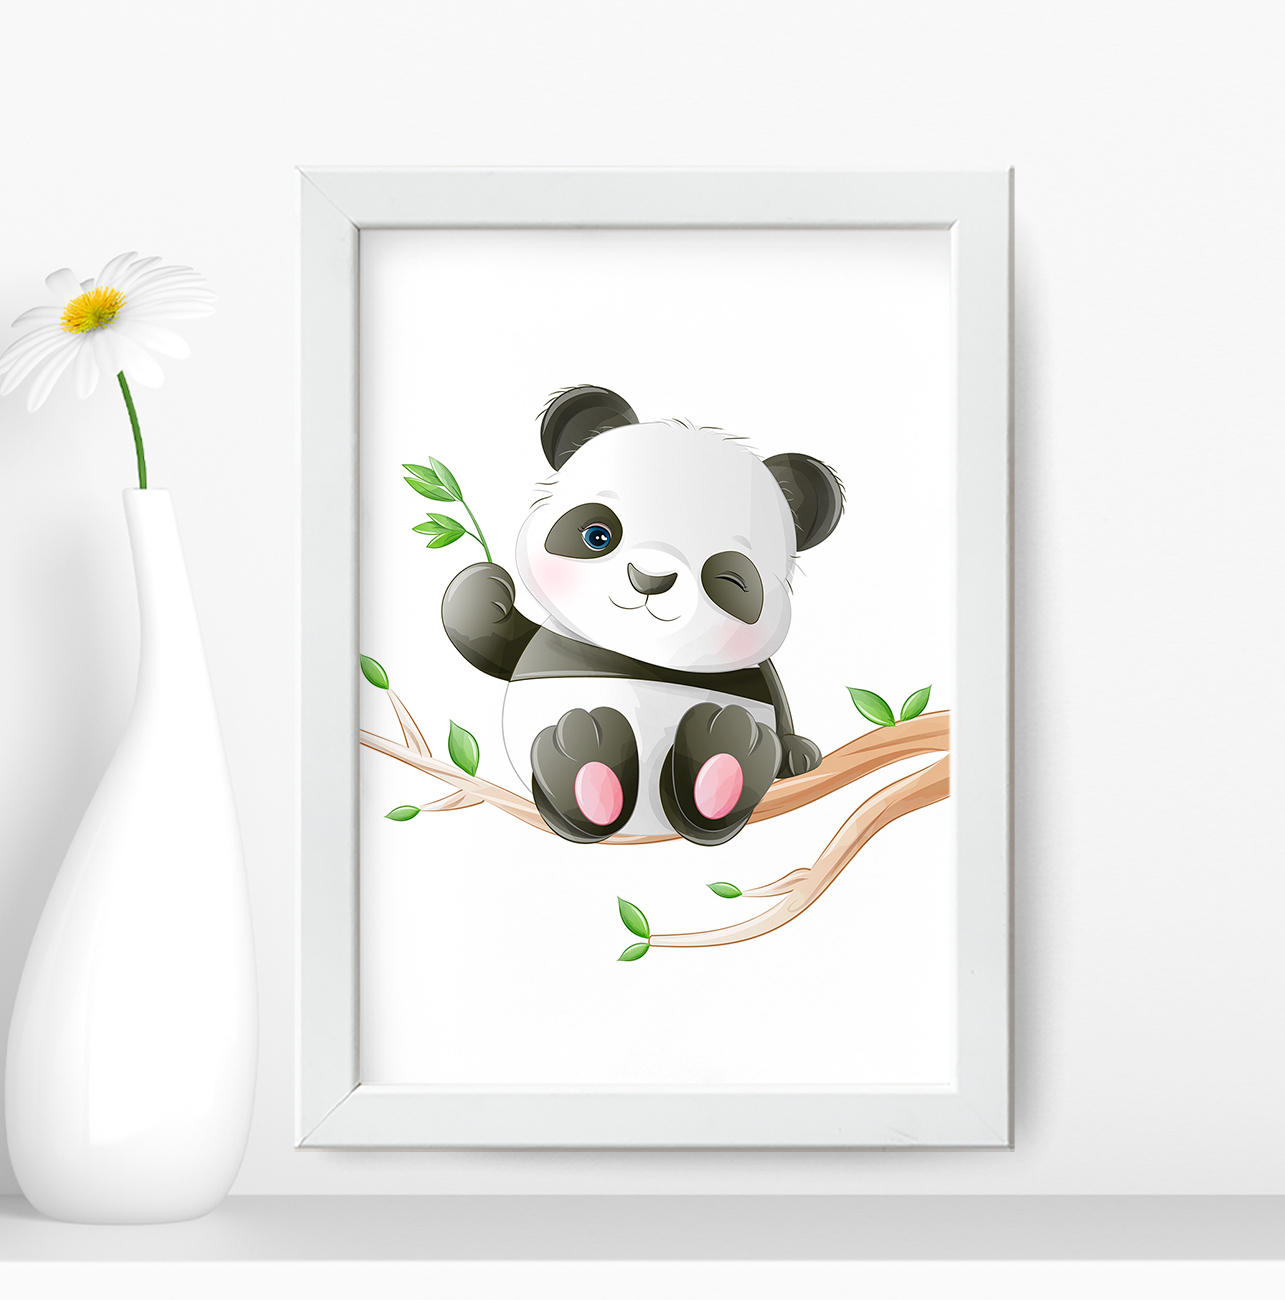 Quadro Decorativo Urso Panda com Tons Verdes SKU: 4321g